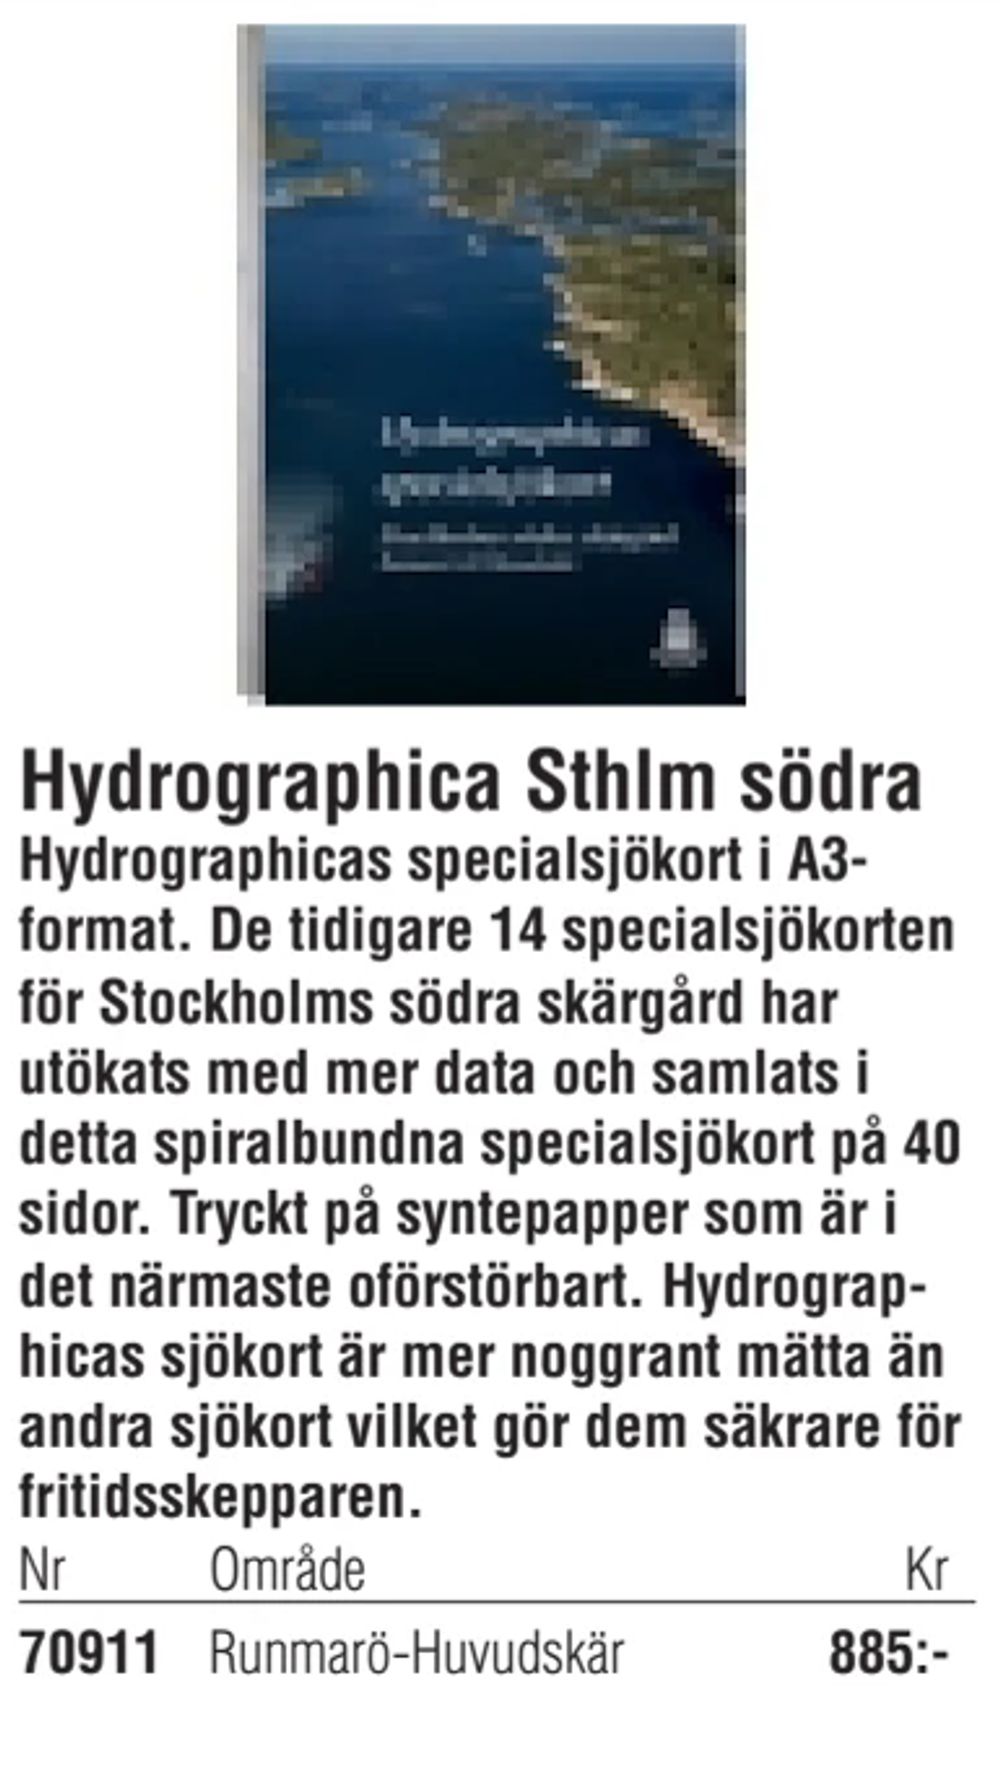 Erbjudanden på Hydrographica Sthlm södra från Erlandsons Brygga för 885 kr